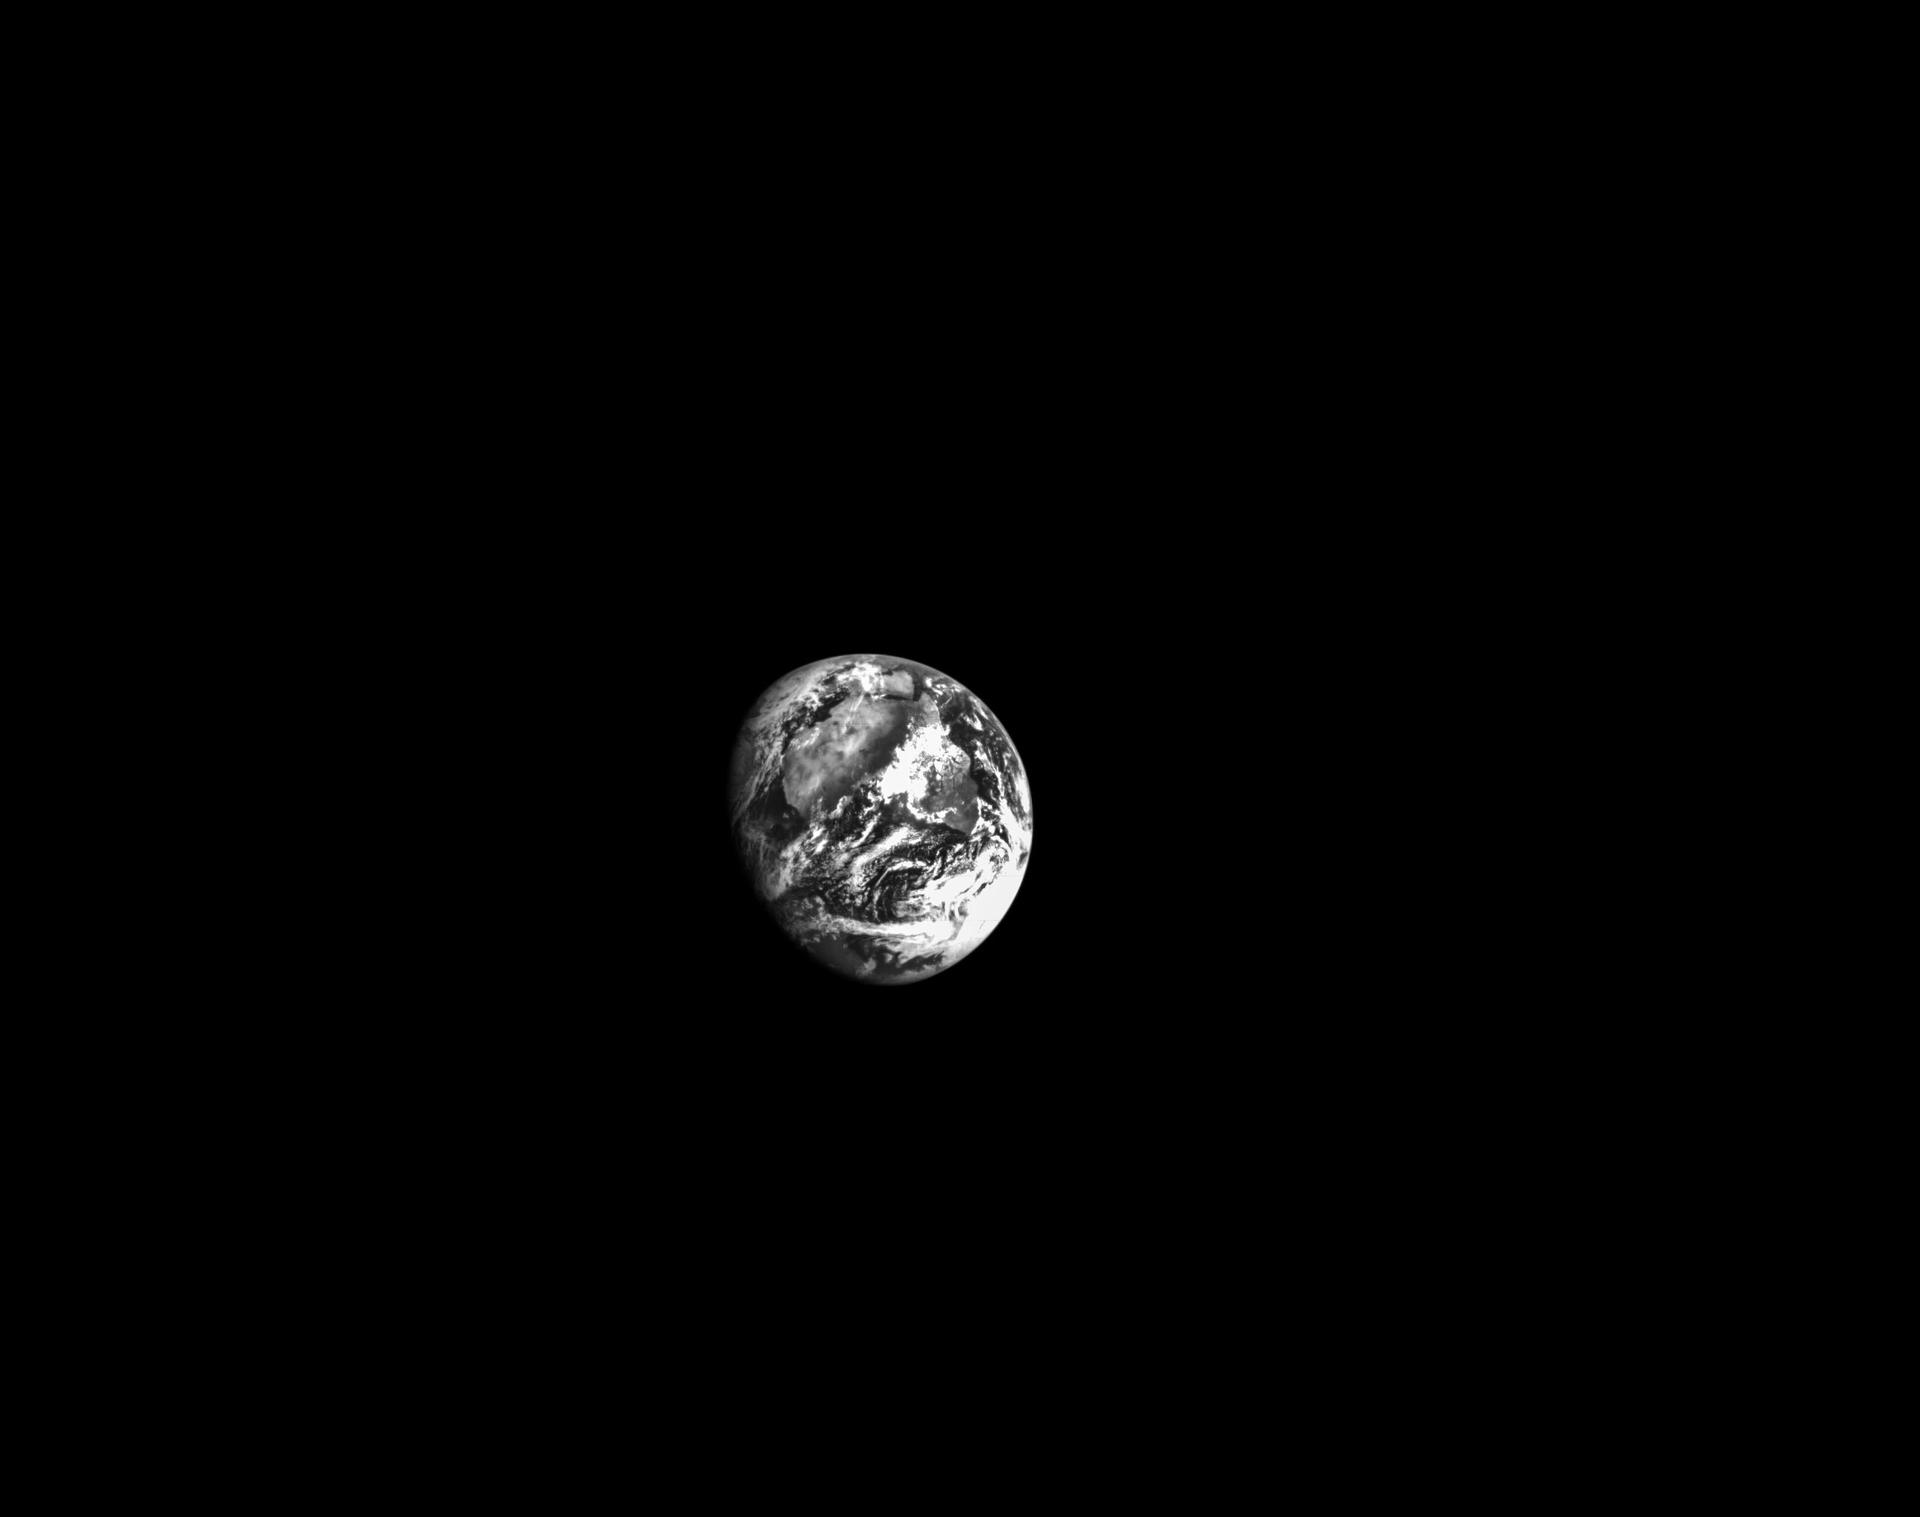 черно-белый портрет Земли